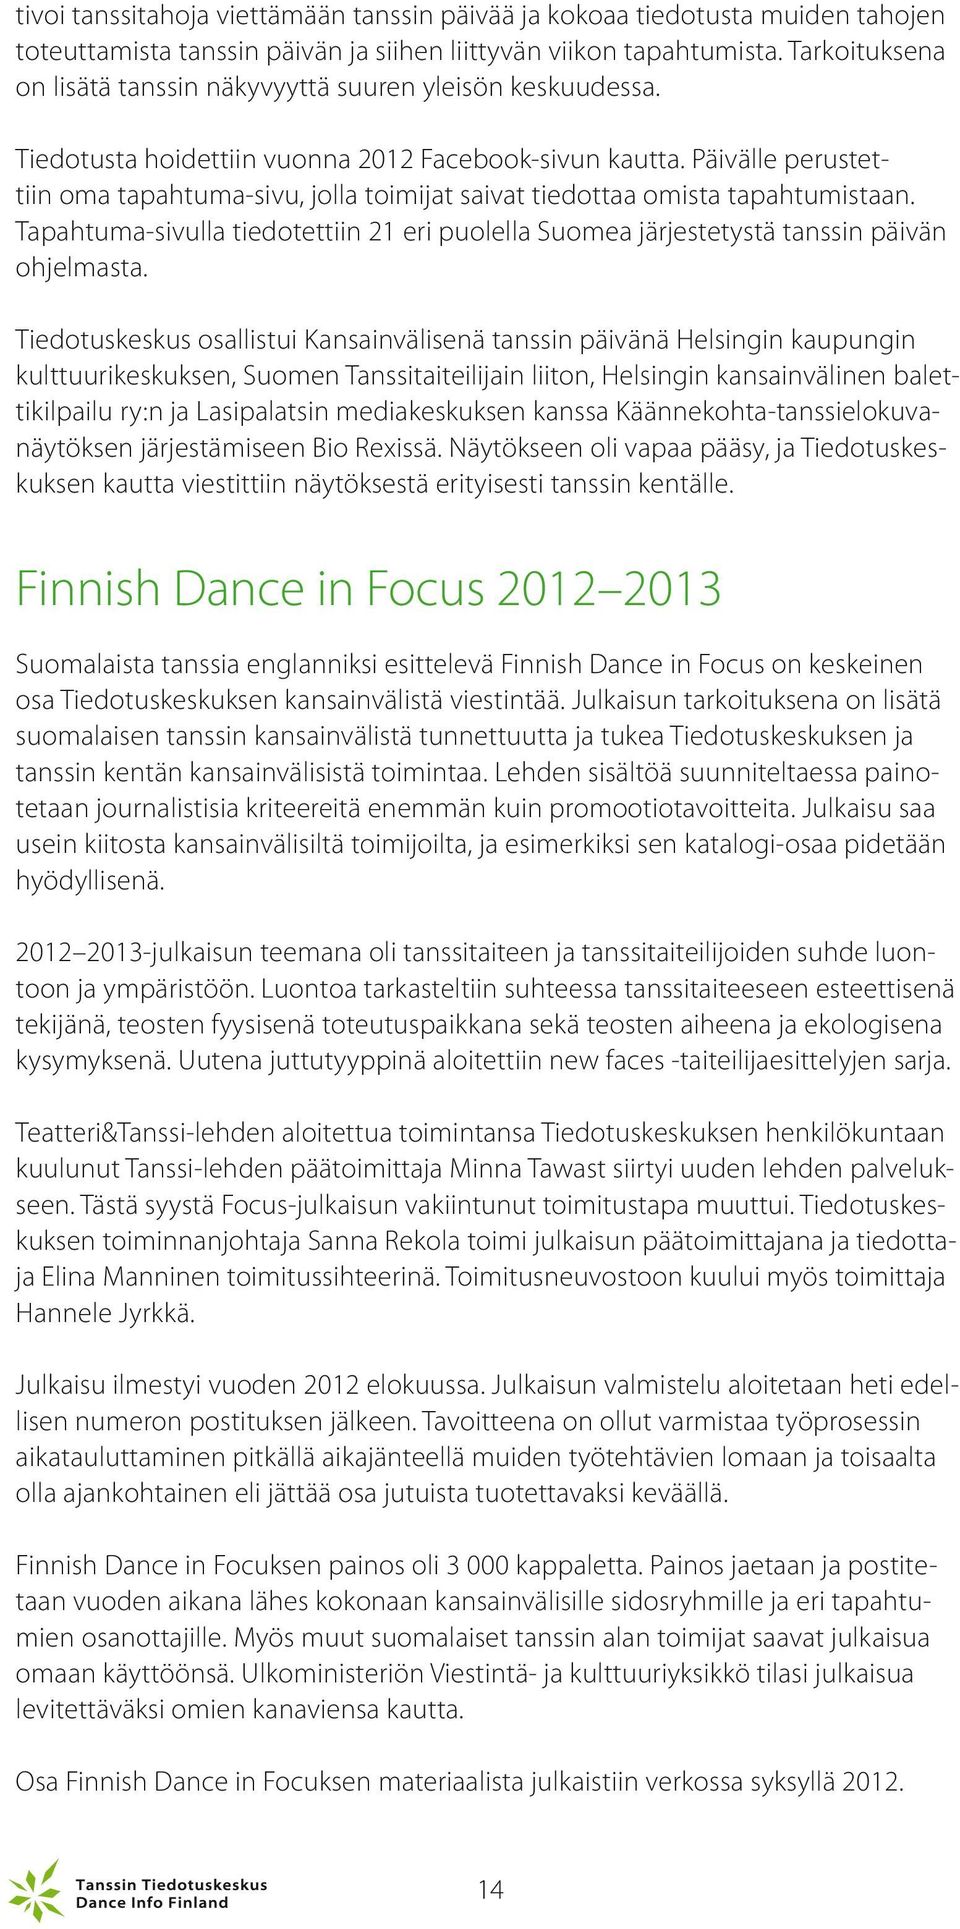 Päivälle perustettiin oma tapahtuma-sivu, jolla toimijat saivat tiedottaa omista tapahtumistaan. Tapahtuma-sivulla tiedotettiin 21 eri puolella Suomea järjestetystä tanssin päivän ohjelmasta.